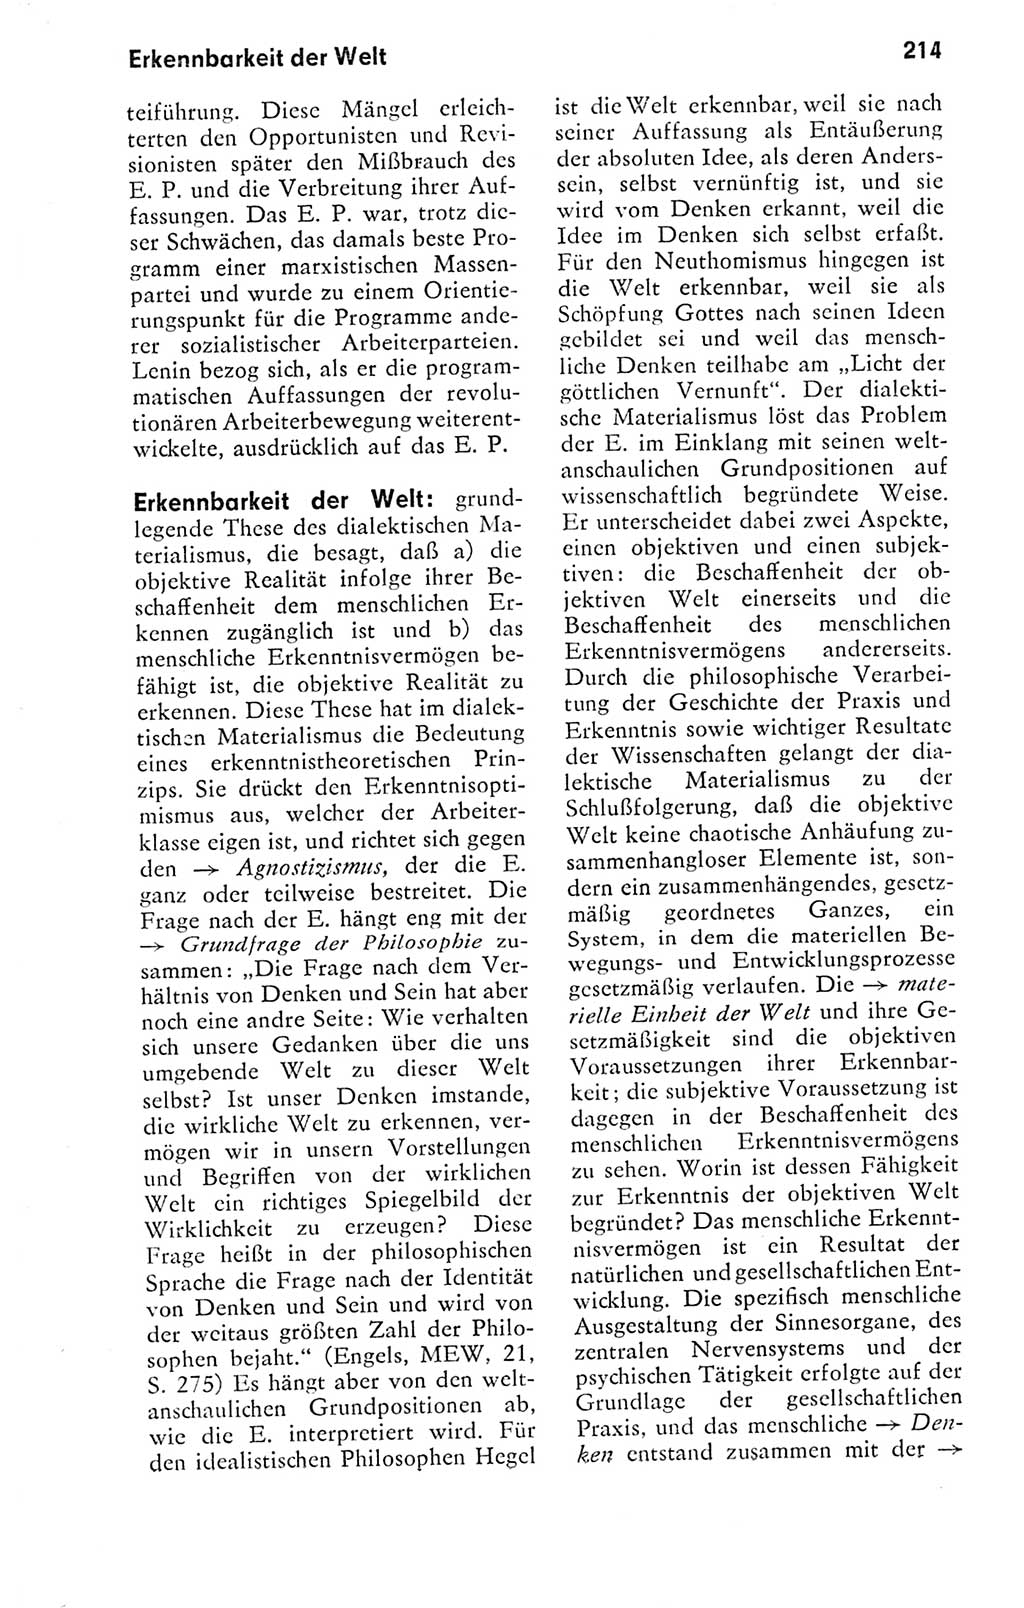 Kleines politisches Wörterbuch [Deutsche Demokratische Republik (DDR)] 1978, Seite 214 (Kl. pol. Wb. DDR 1978, S. 214)